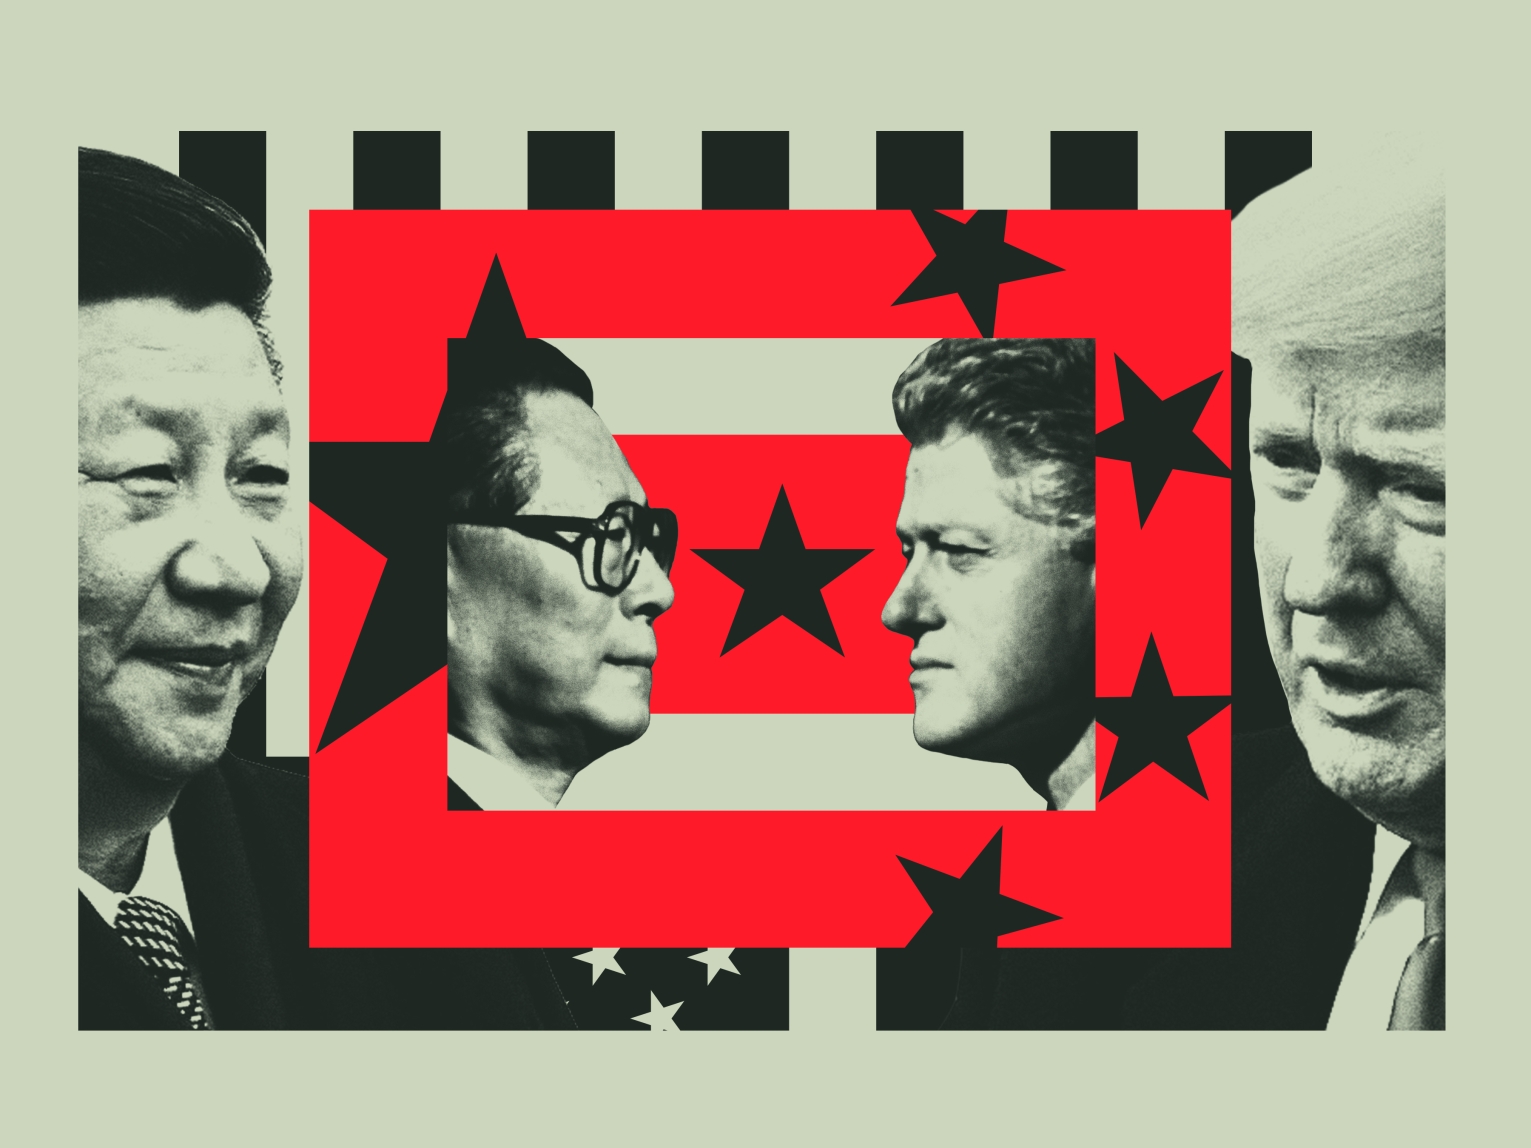 Xi Jinping, Jiang Zemin, Bill Clinton, Donald Trump